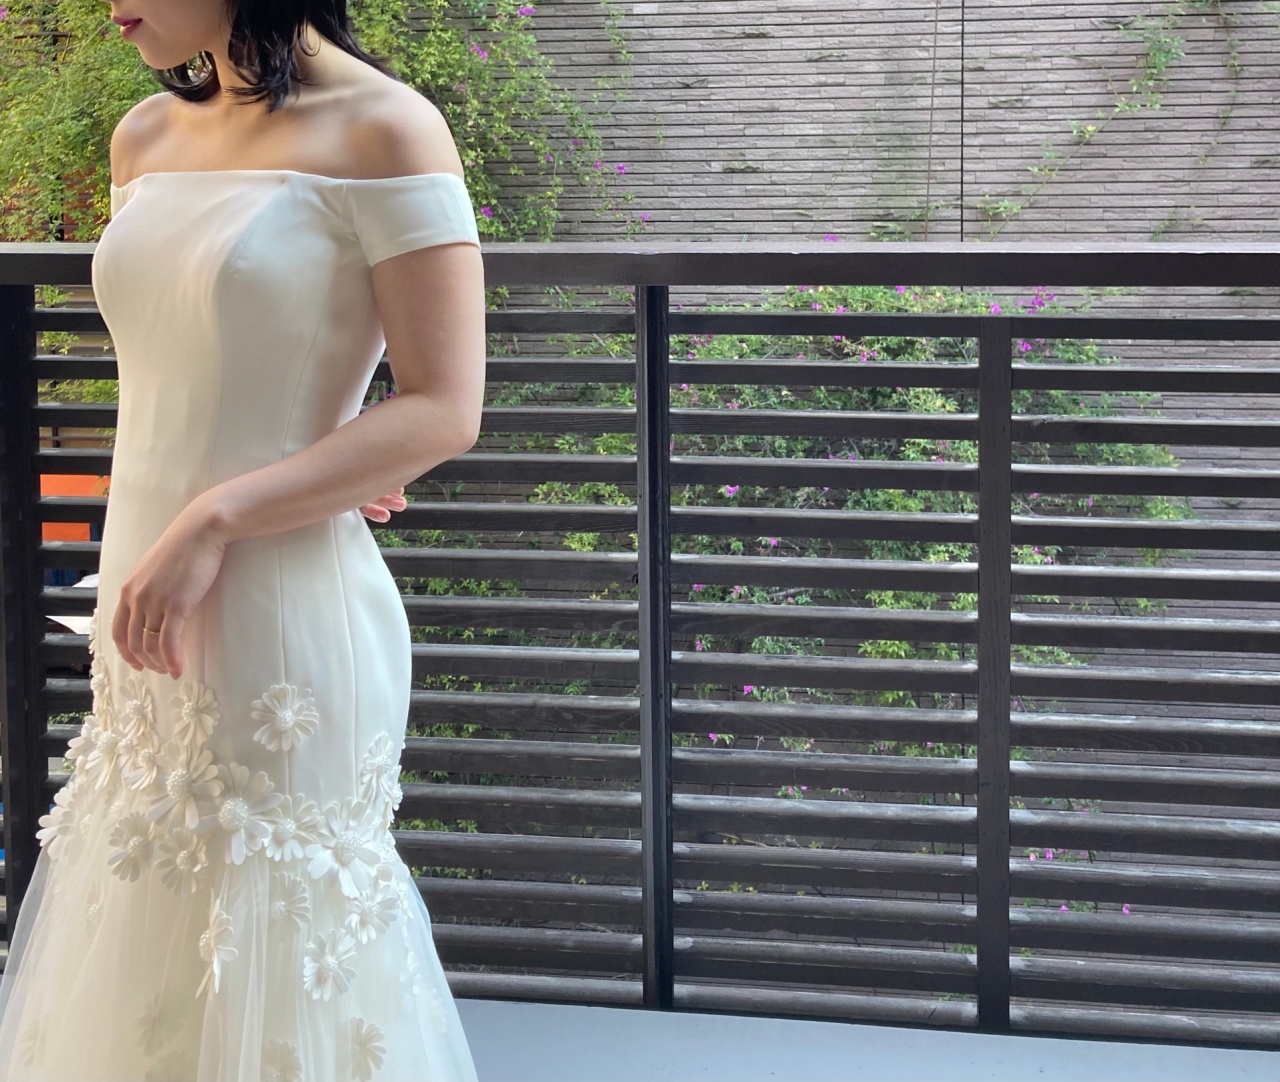 ウィズザスタイル花嫁におすすめなオシャレで個性溢れるデイジーモチーフのウェディングドレス